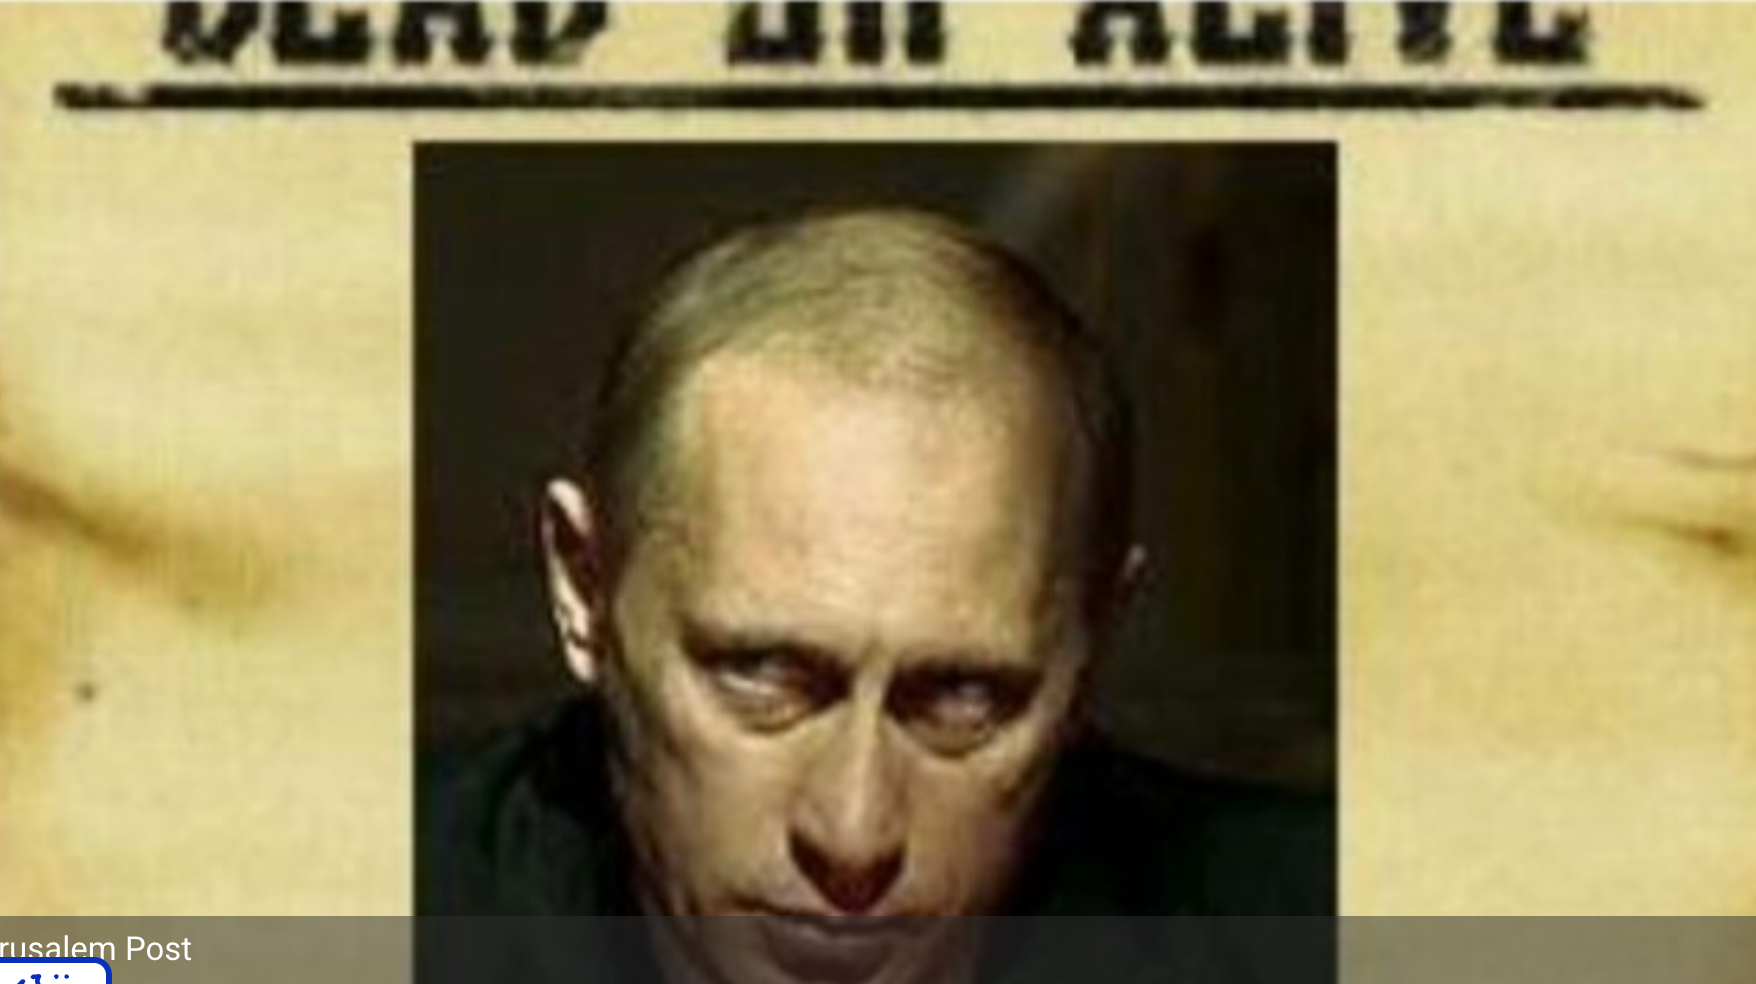 Recompensă pe capul lui Putin: un milion de dolari. ”Căutat – viu sau mort, pentru crime în masă”.